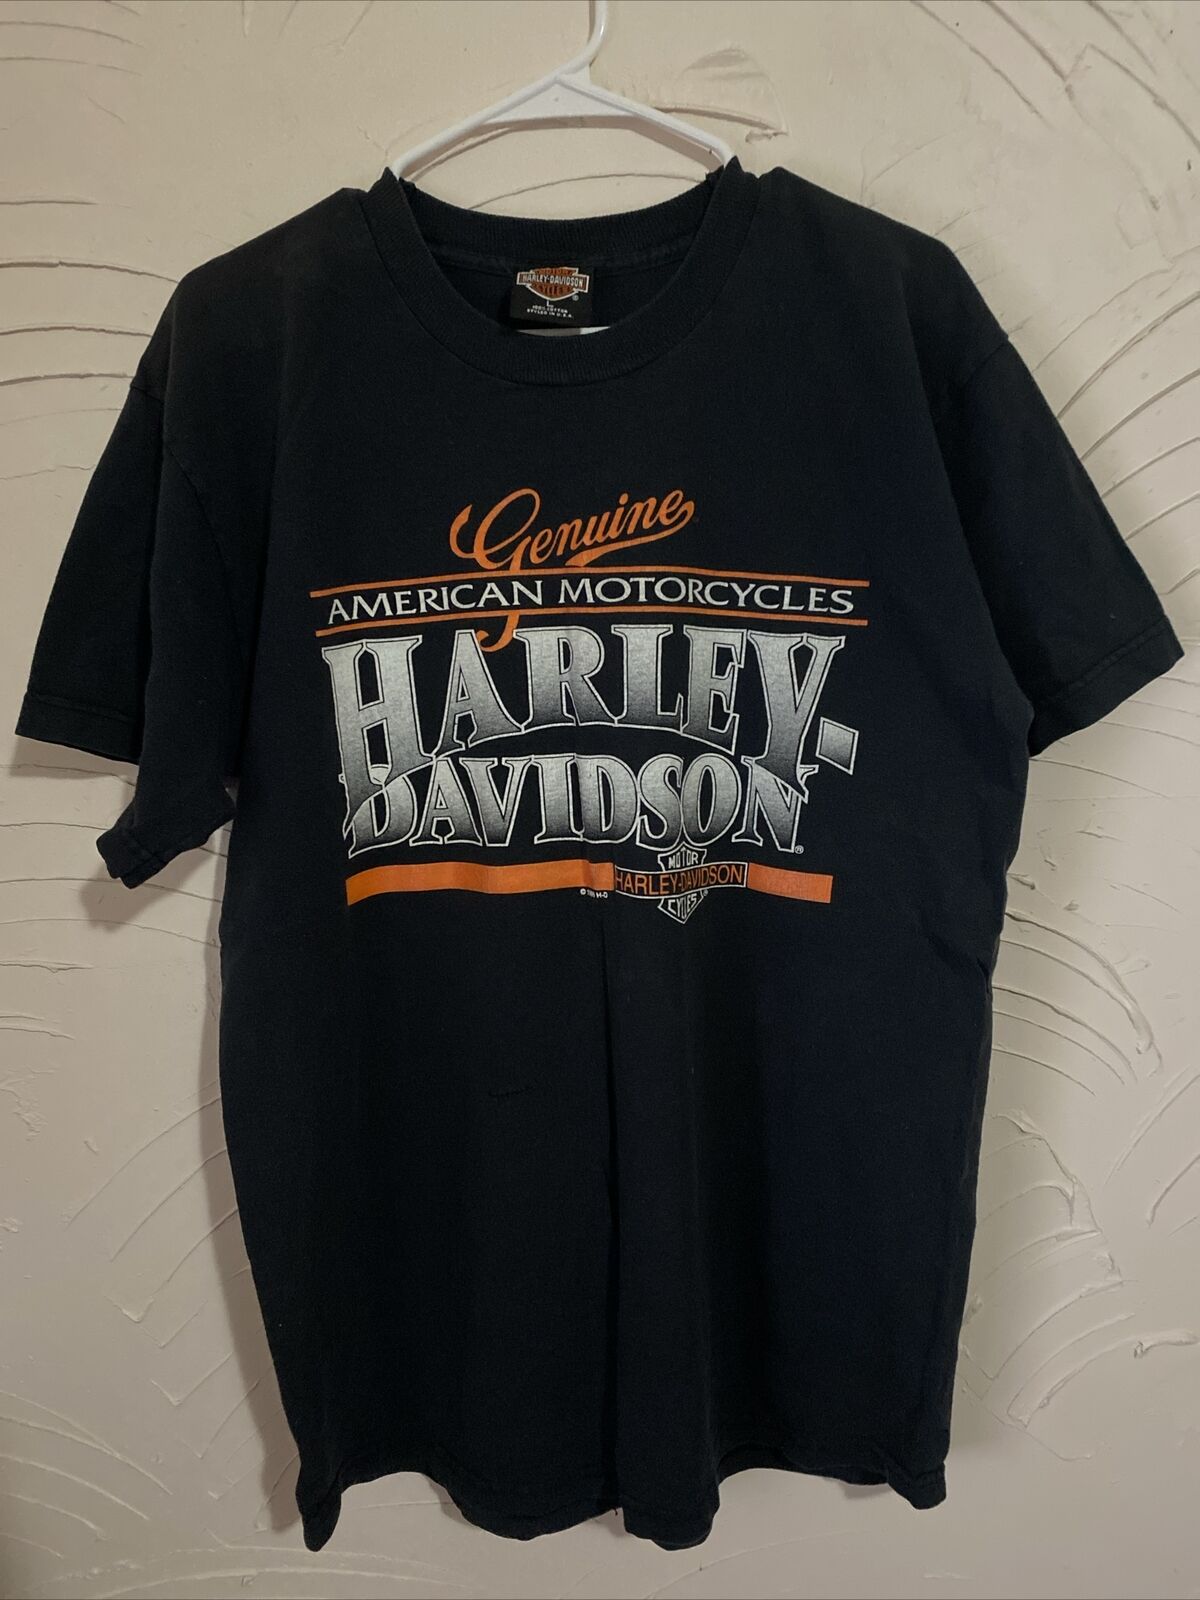 Harley Davidson UK Wheels International Bedfordshire Black T-Shirt Size Large